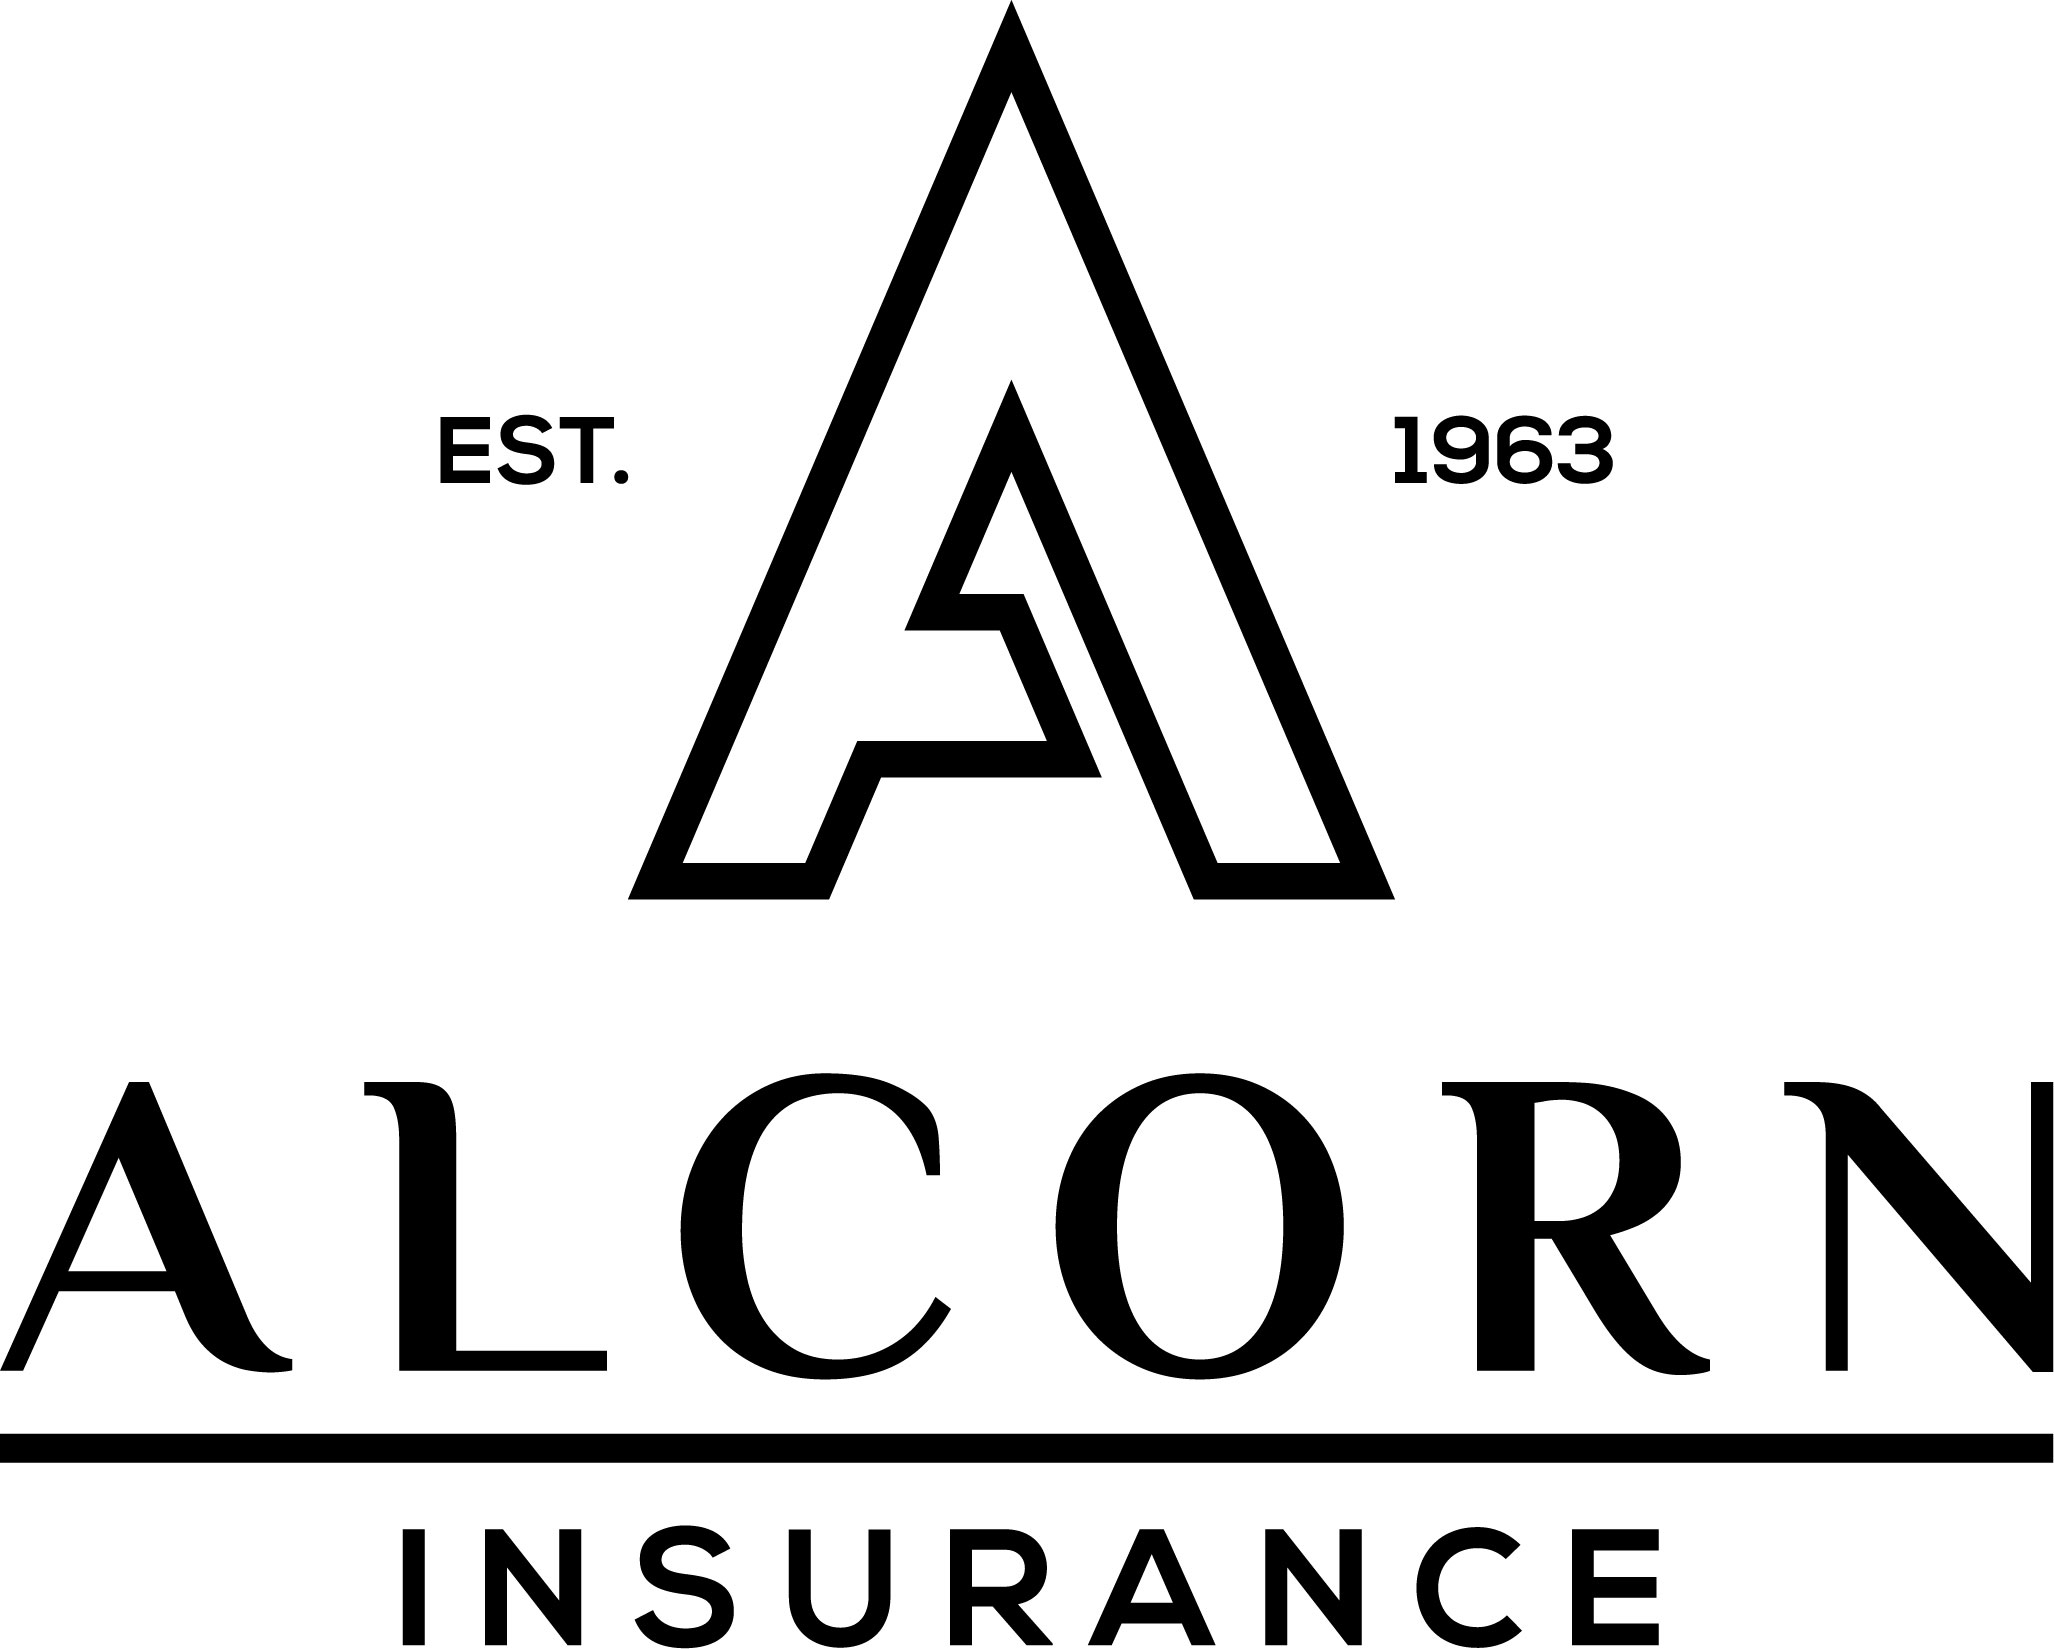 Alcorn Insurance